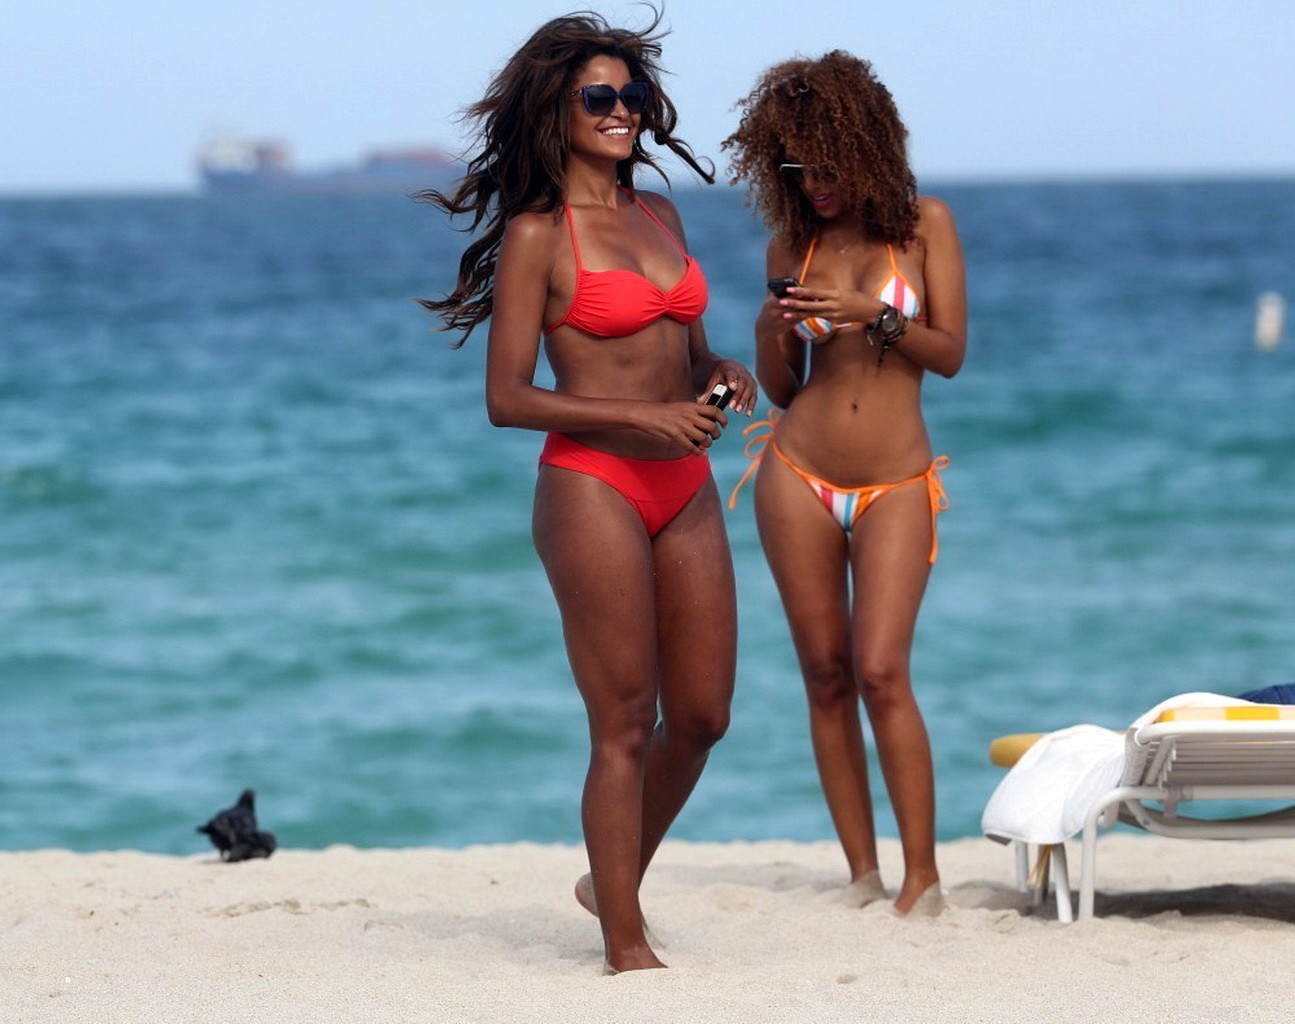 Claudia jordan showing off her bikini body on a beach in miami.